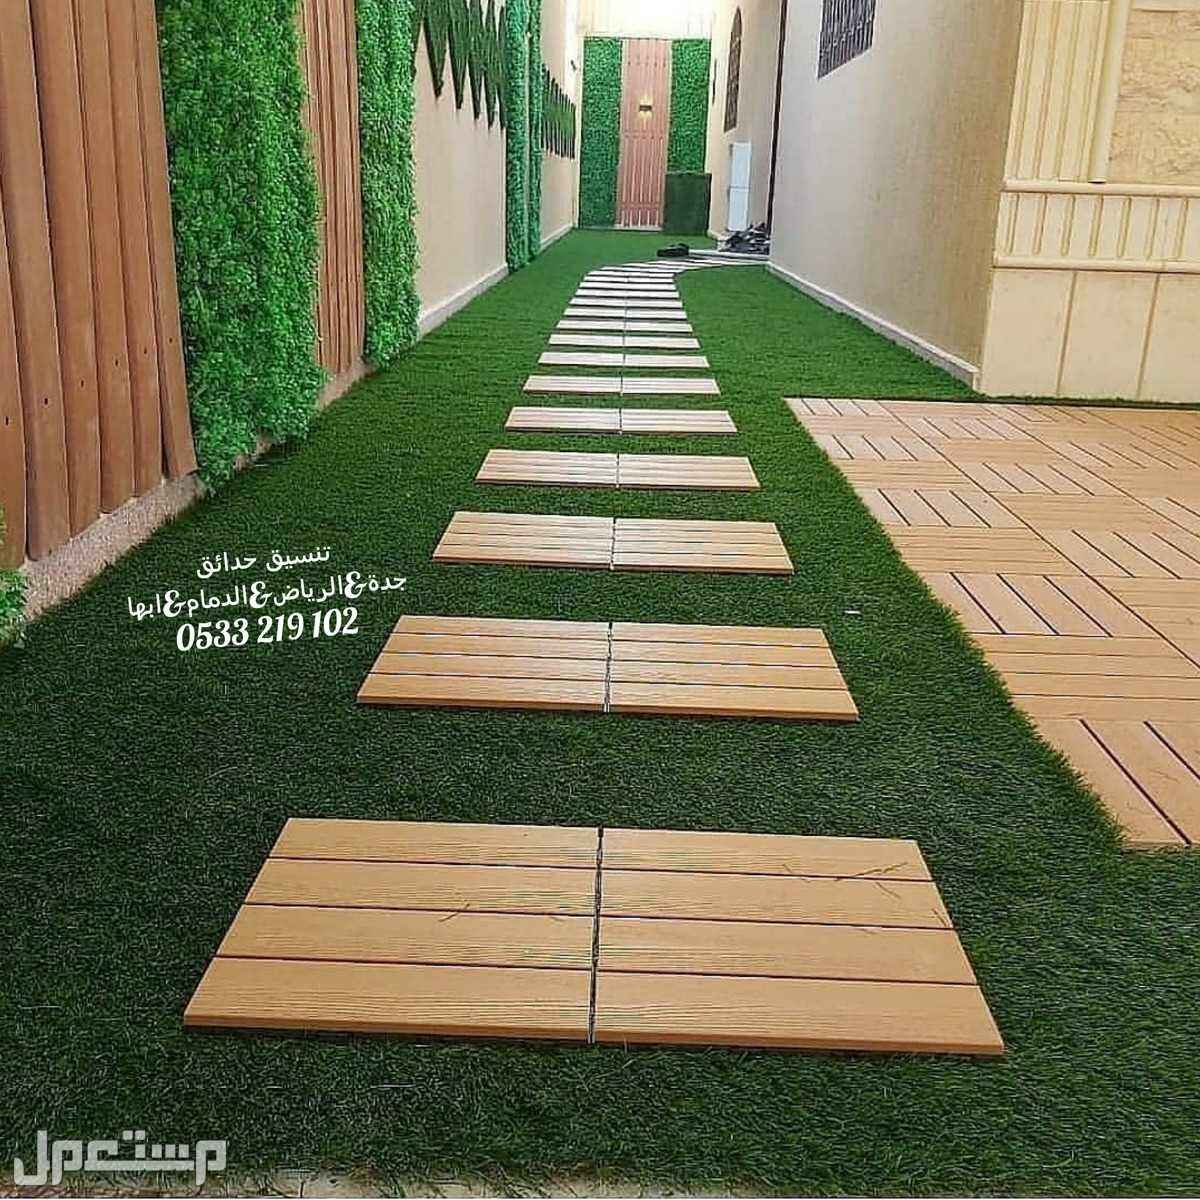 تركيب عشب صناعى حدائق السعودية مظلات برجولات شلالات نوافير حدائق العشب الصناعي 0533219102